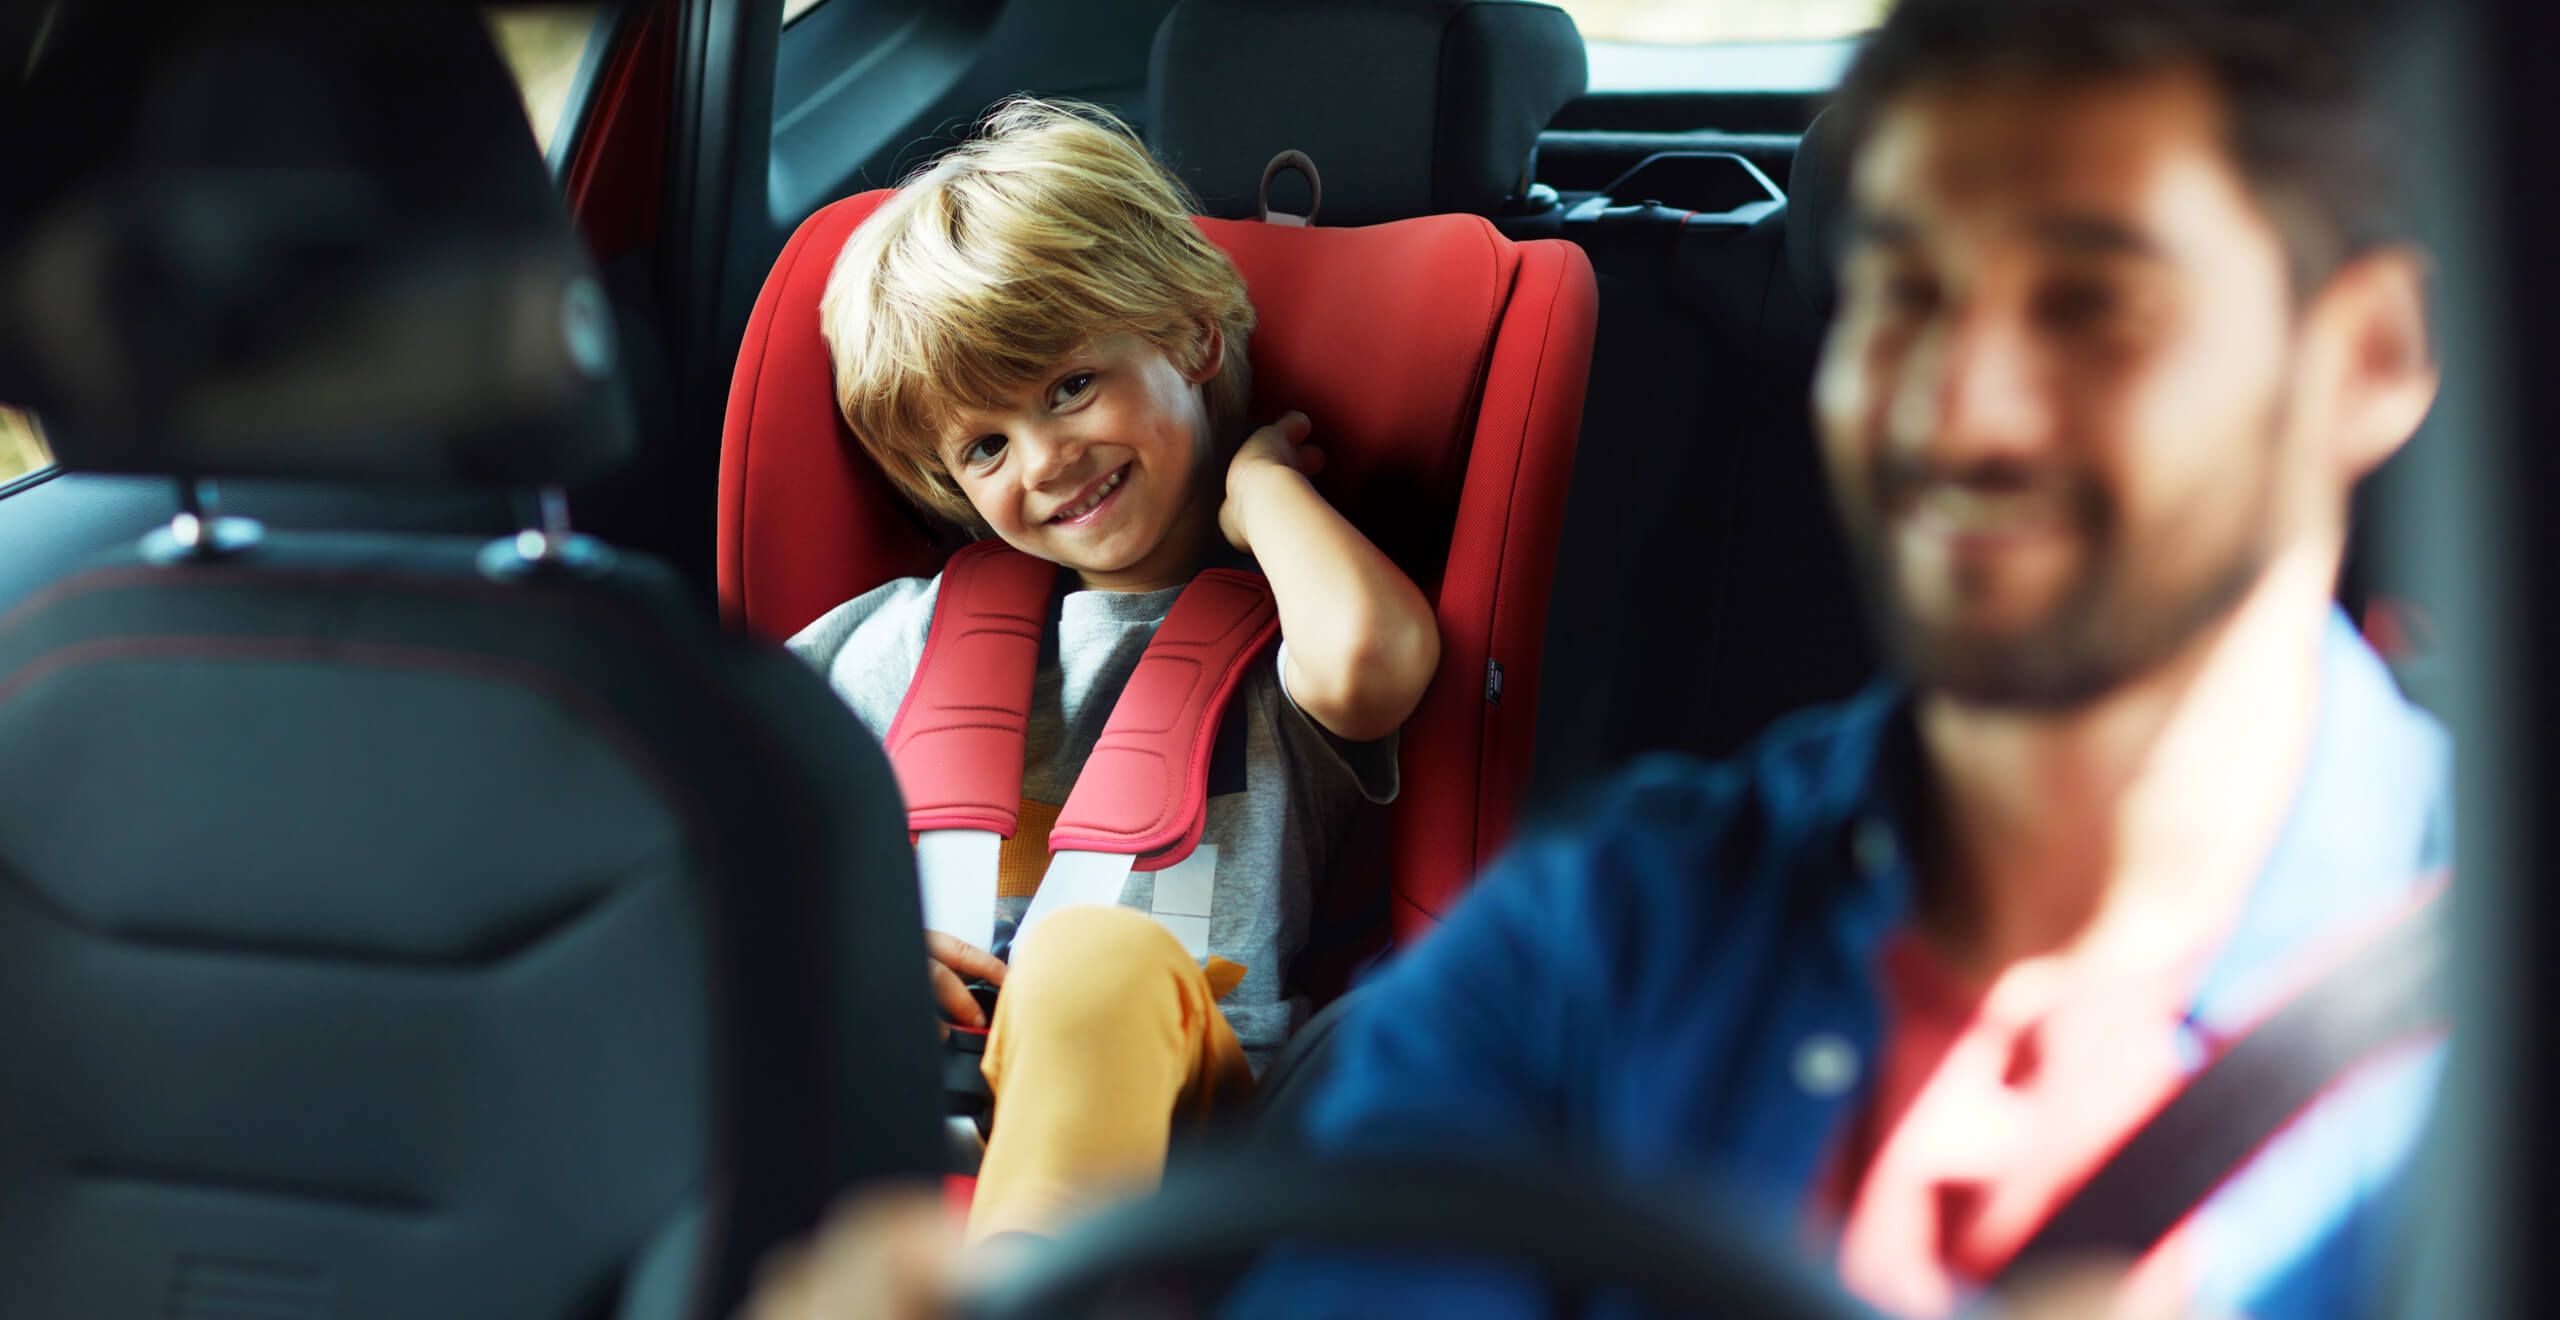 SEAT Arona fleet services child safety